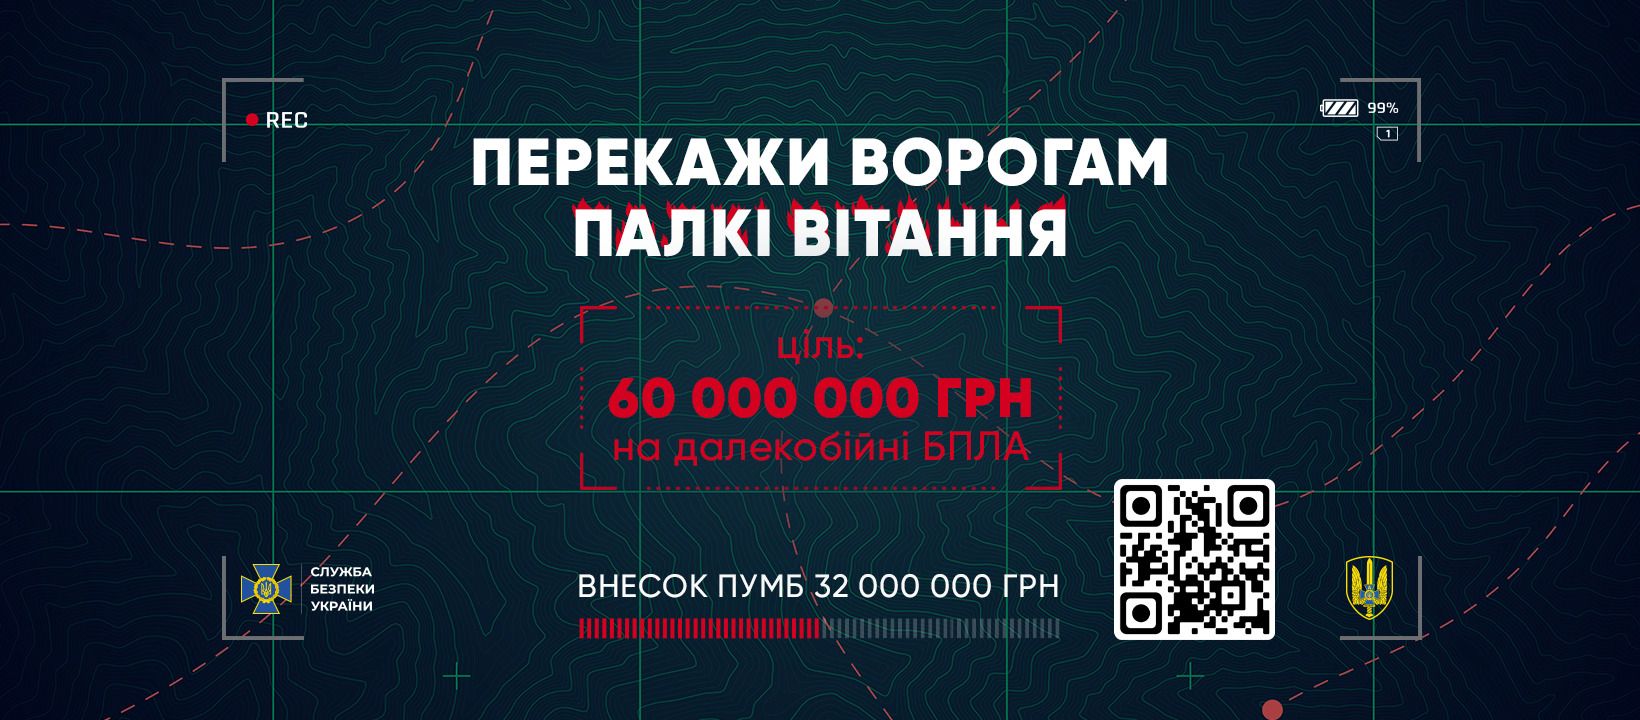 СБУ и ПУМБ собирают на дальнобойные БПЛА "Морок" украинского производства: цель – 60 миллионов